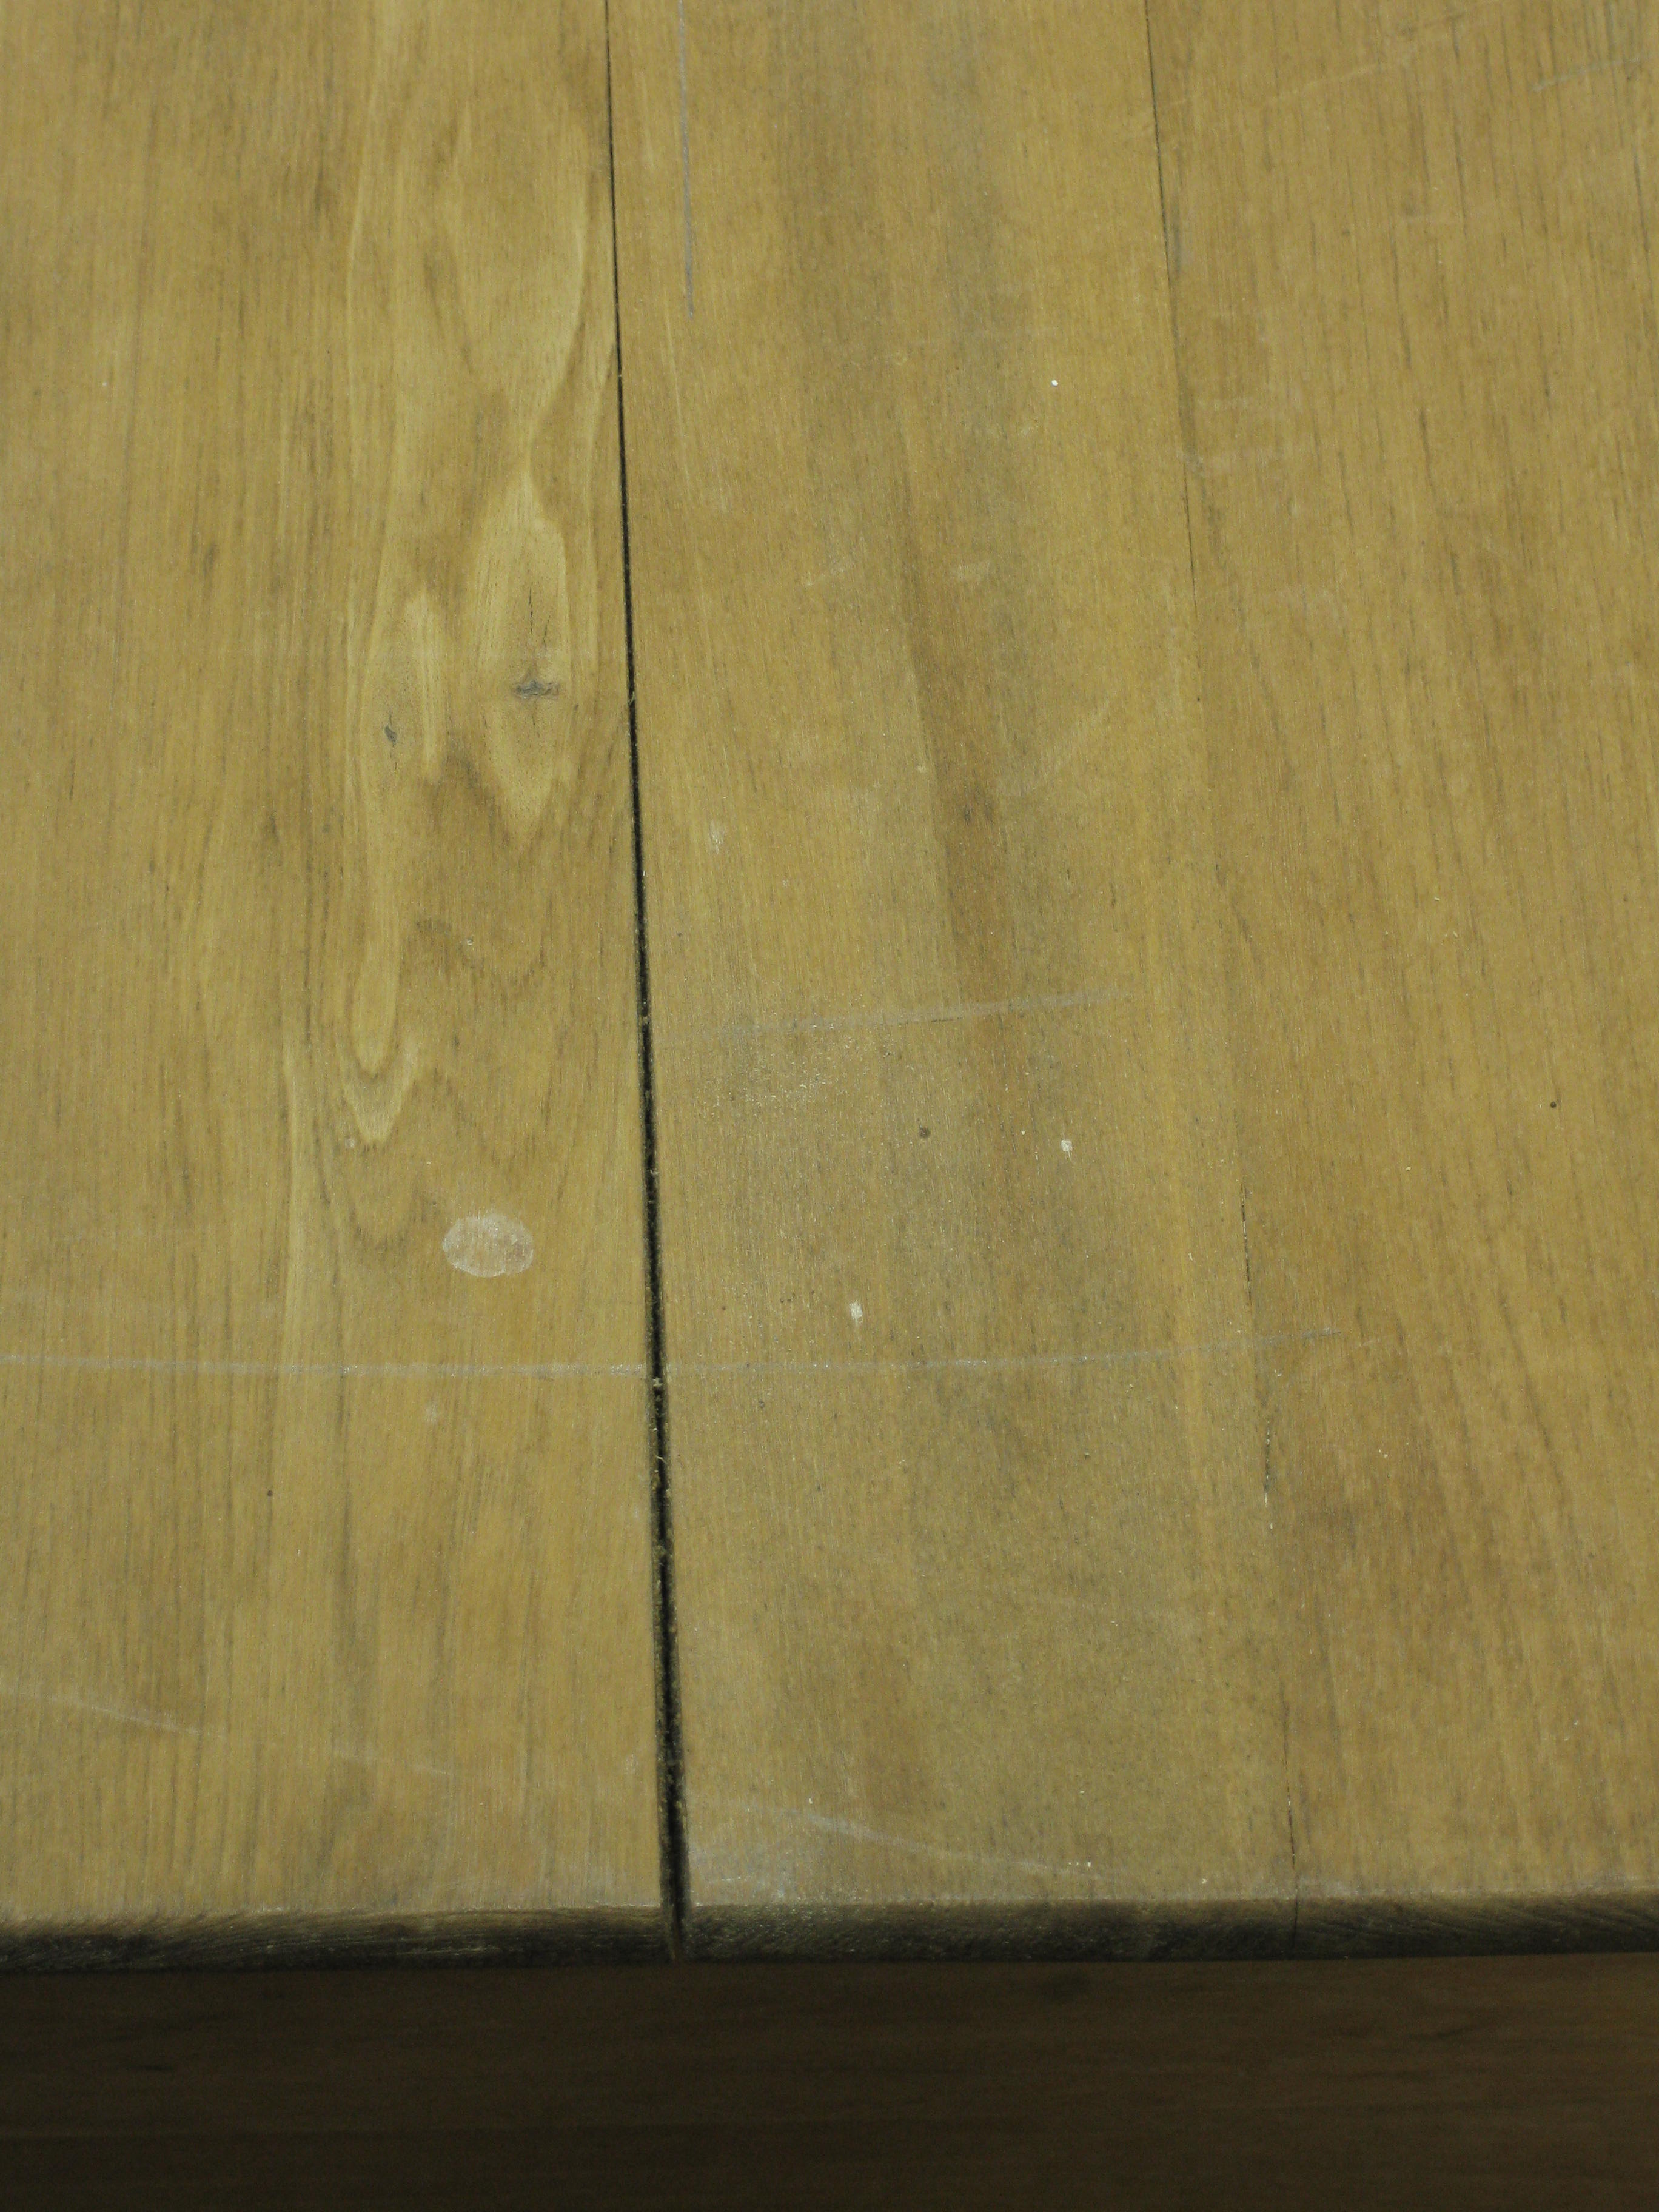 Repairing Cracks and Splits [wood filler]  millcreek woodworking